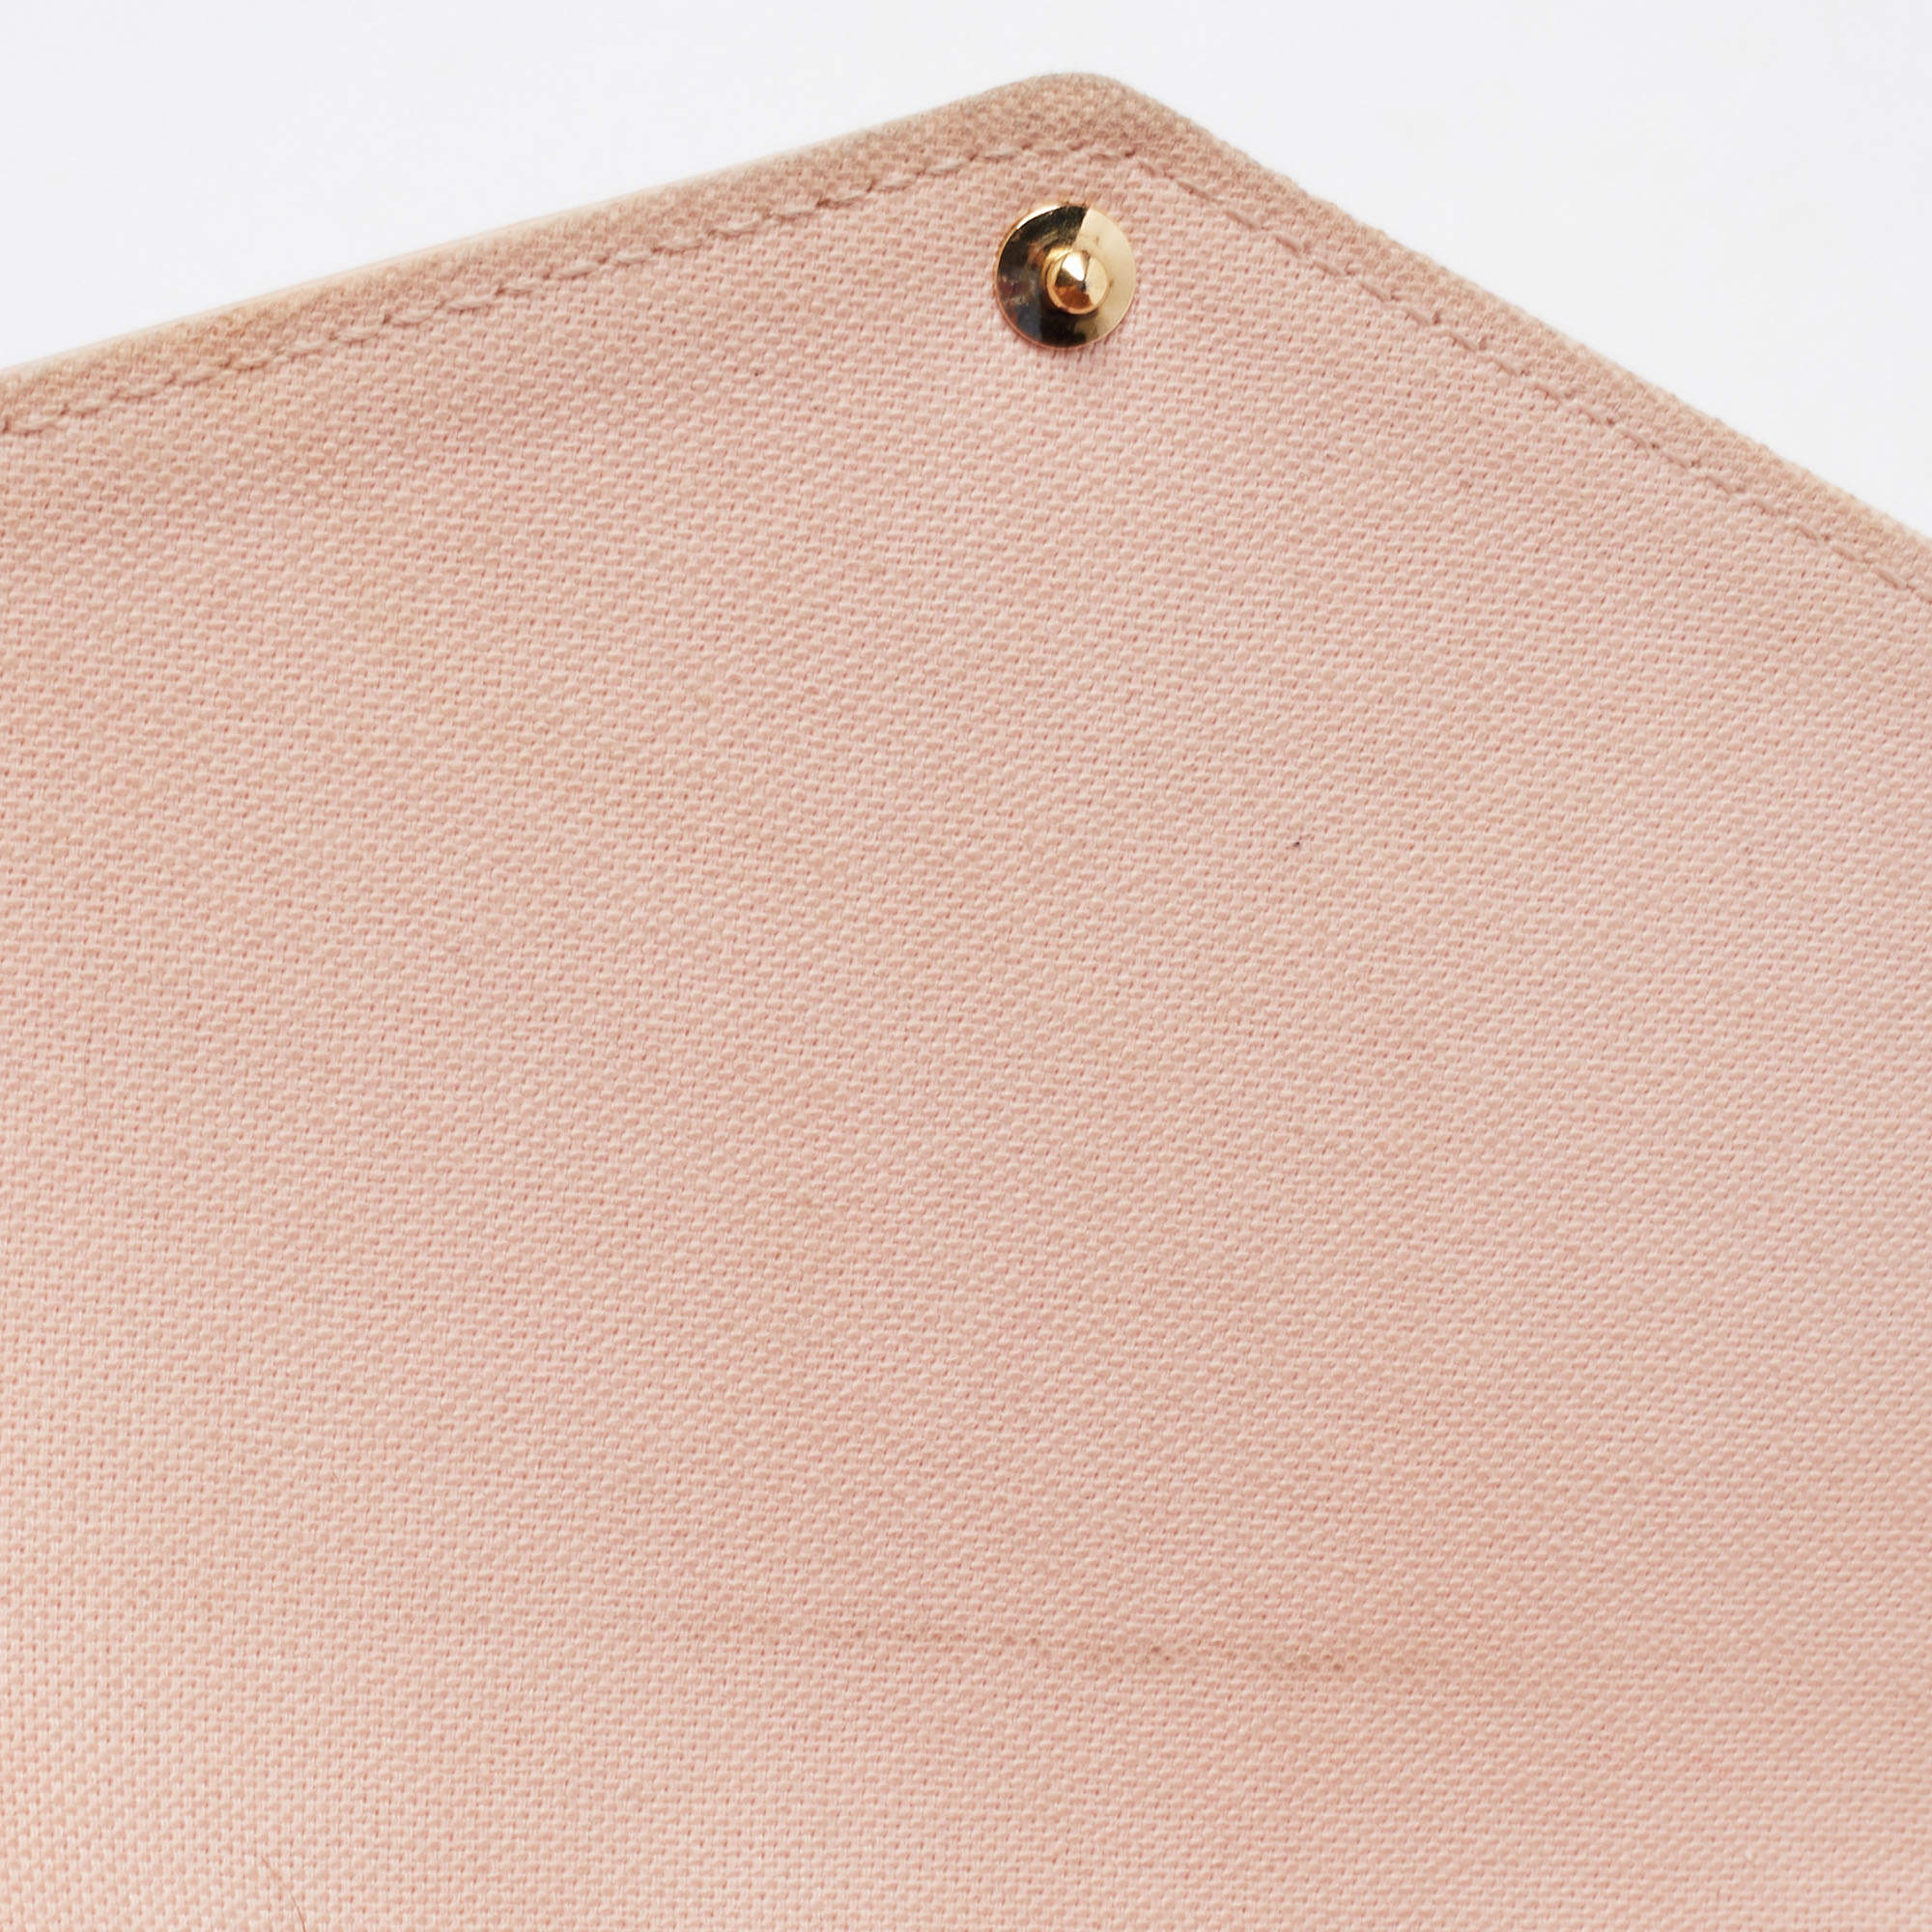 Louis Vuitton Felicie Pochette Damier Azur Pink - THE PURSE AFFAIR